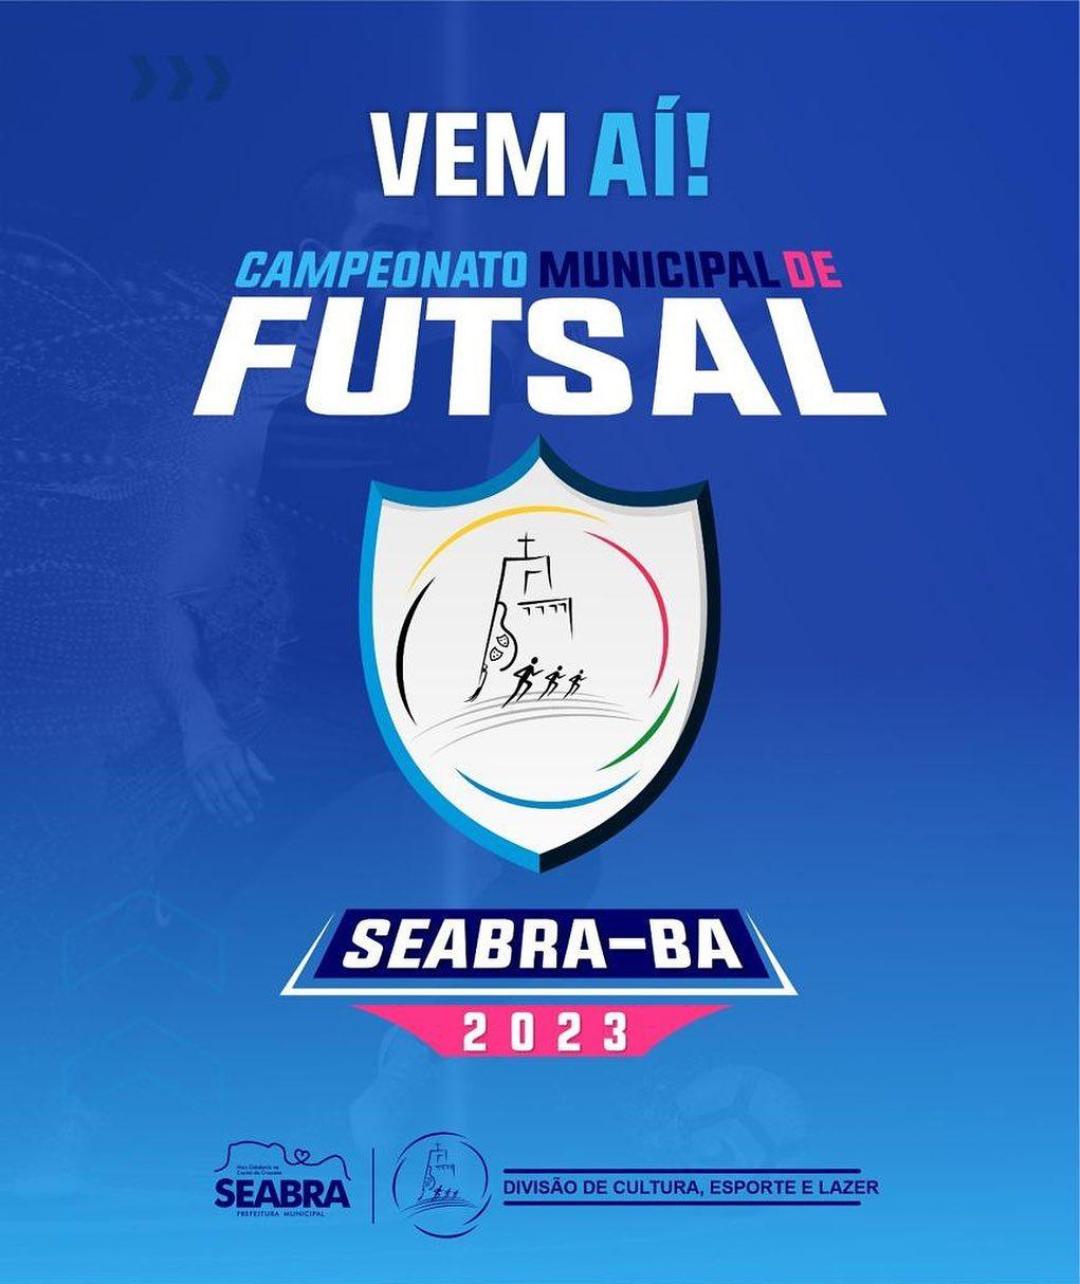 Vem aí! Campeonato Municipal de Futsal.